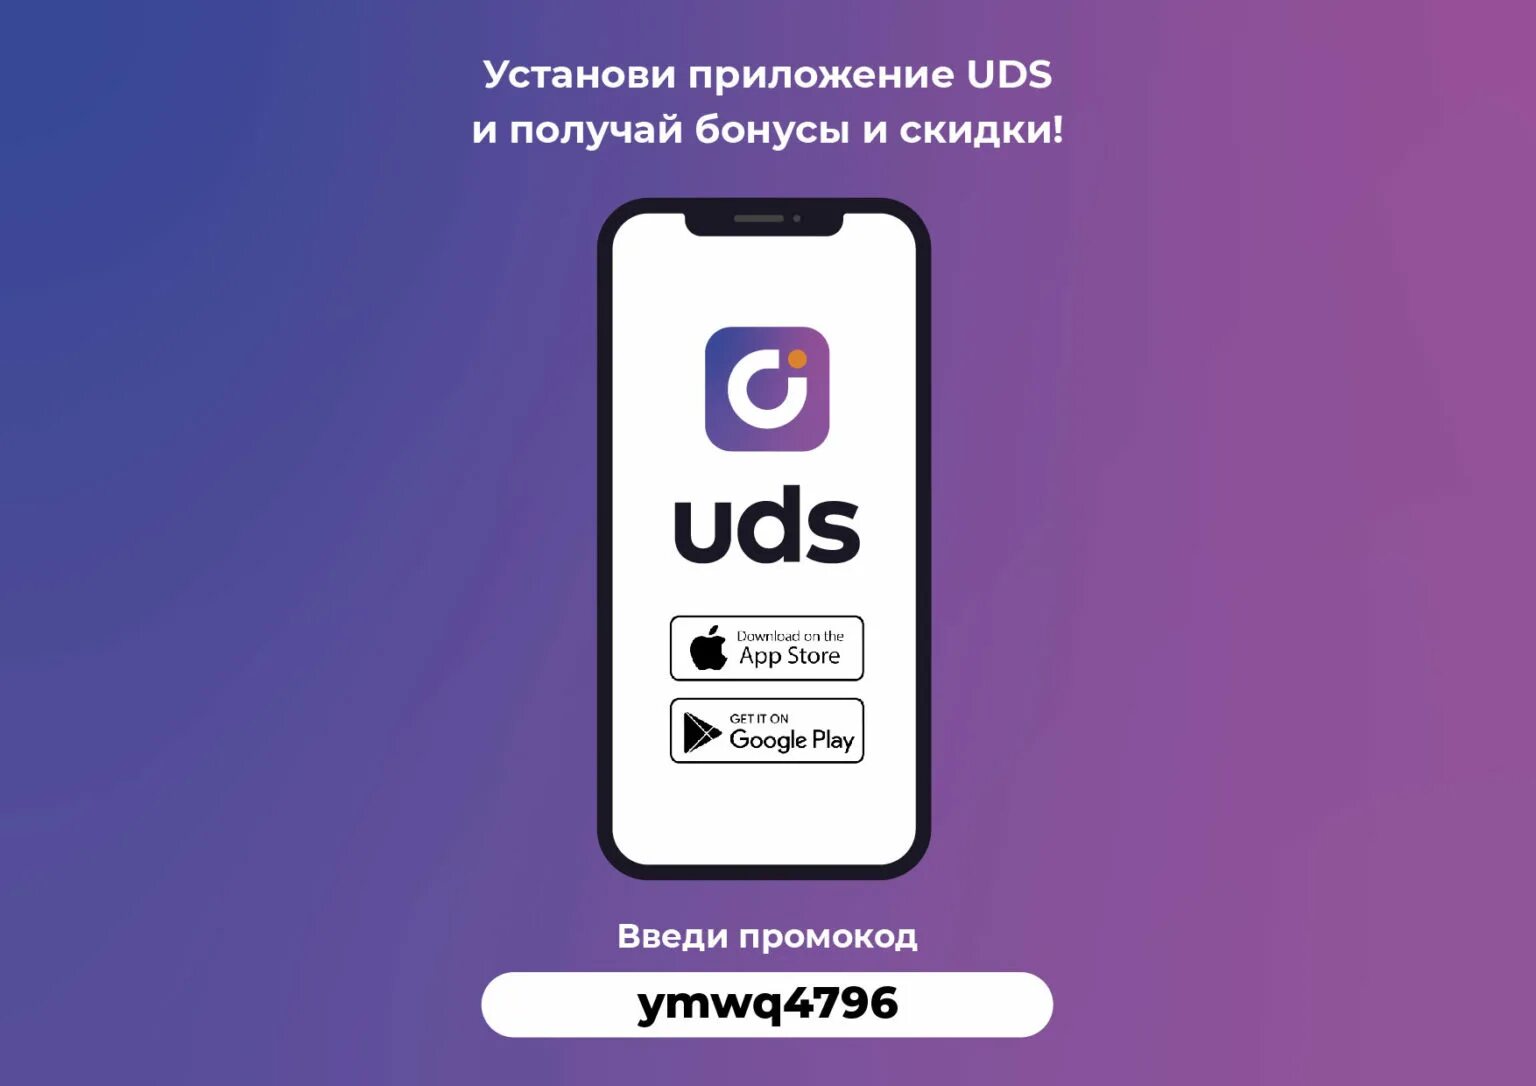 Https uds app. UDS приложение. UDS скидки. Система лояльности UDS. Бонусы ЮДС.